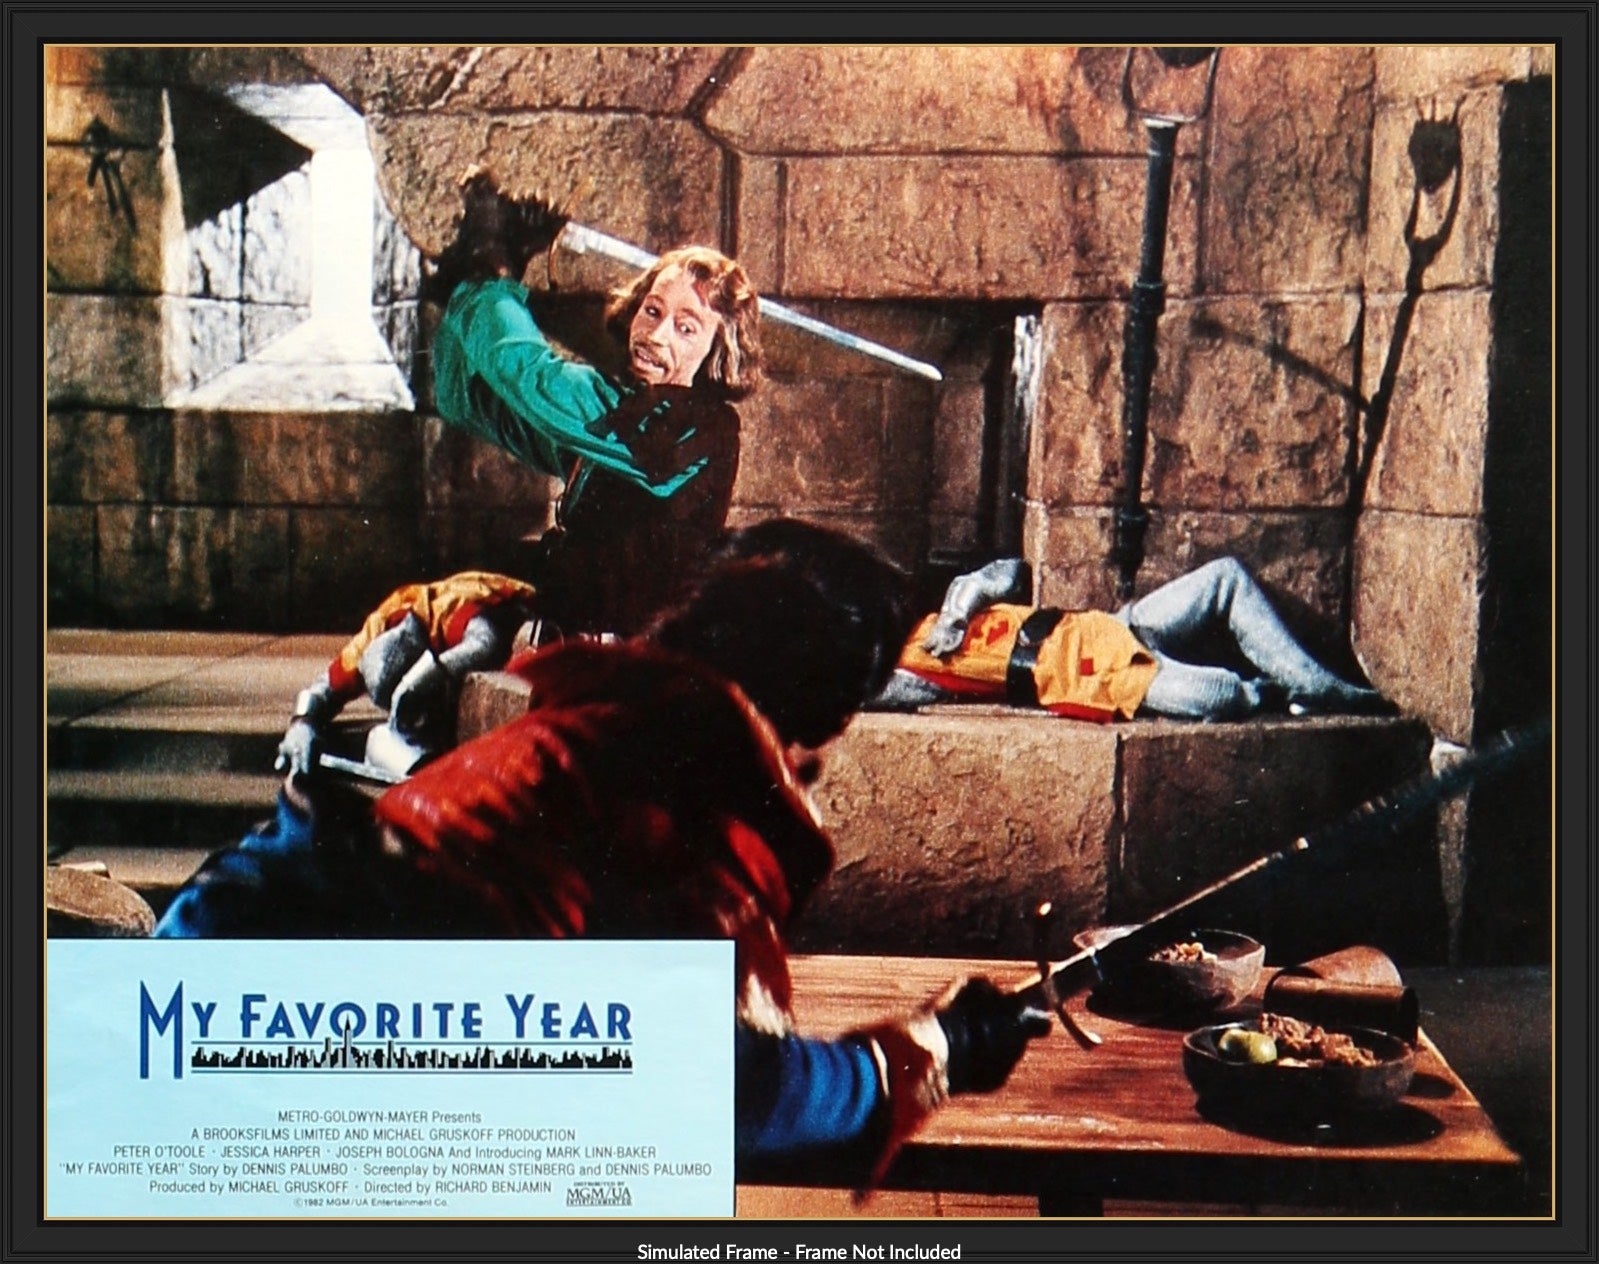 My Favorite Year (1982) original movie poster for sale at Original Film Art